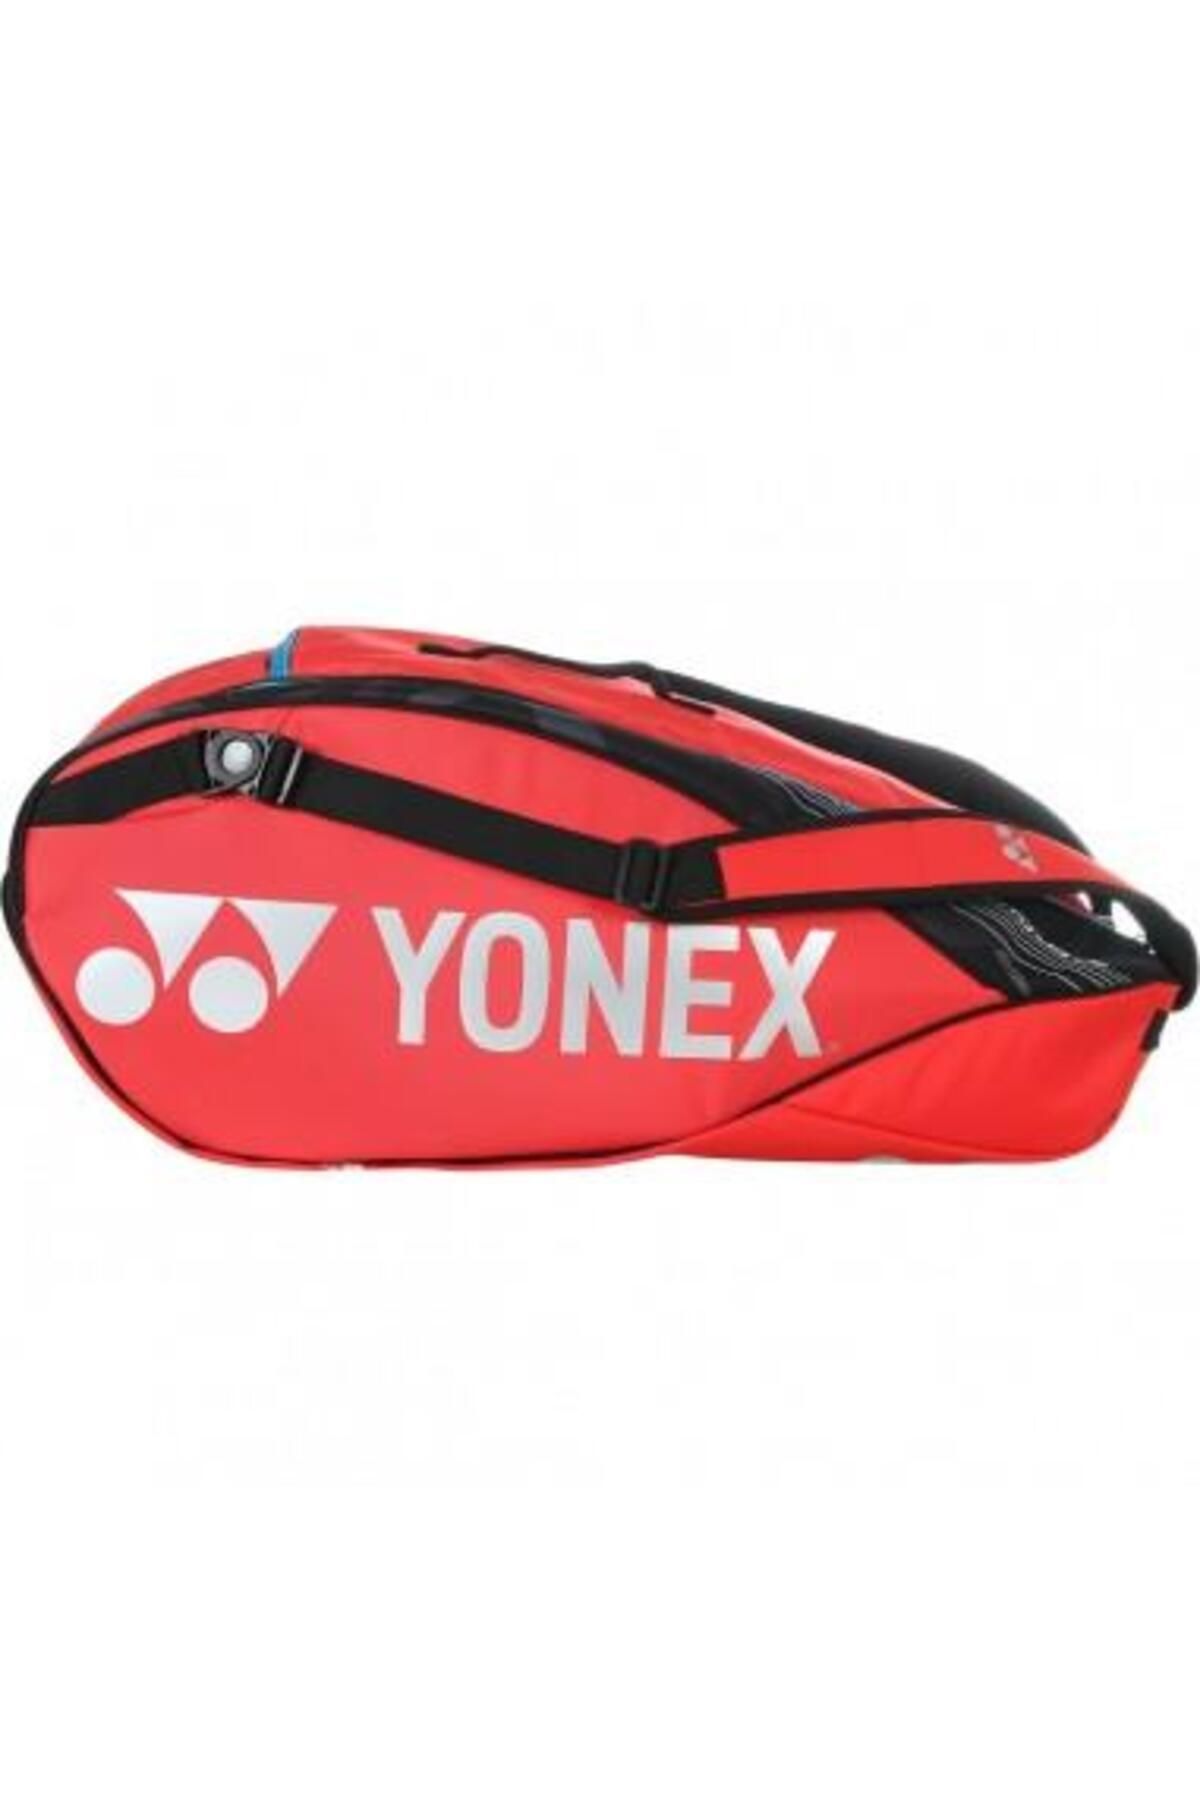 Yonex Pro 92229 Scarlet Kırmızı Tenis Çantası 9 Raketli Ayakkabı Bölmeli